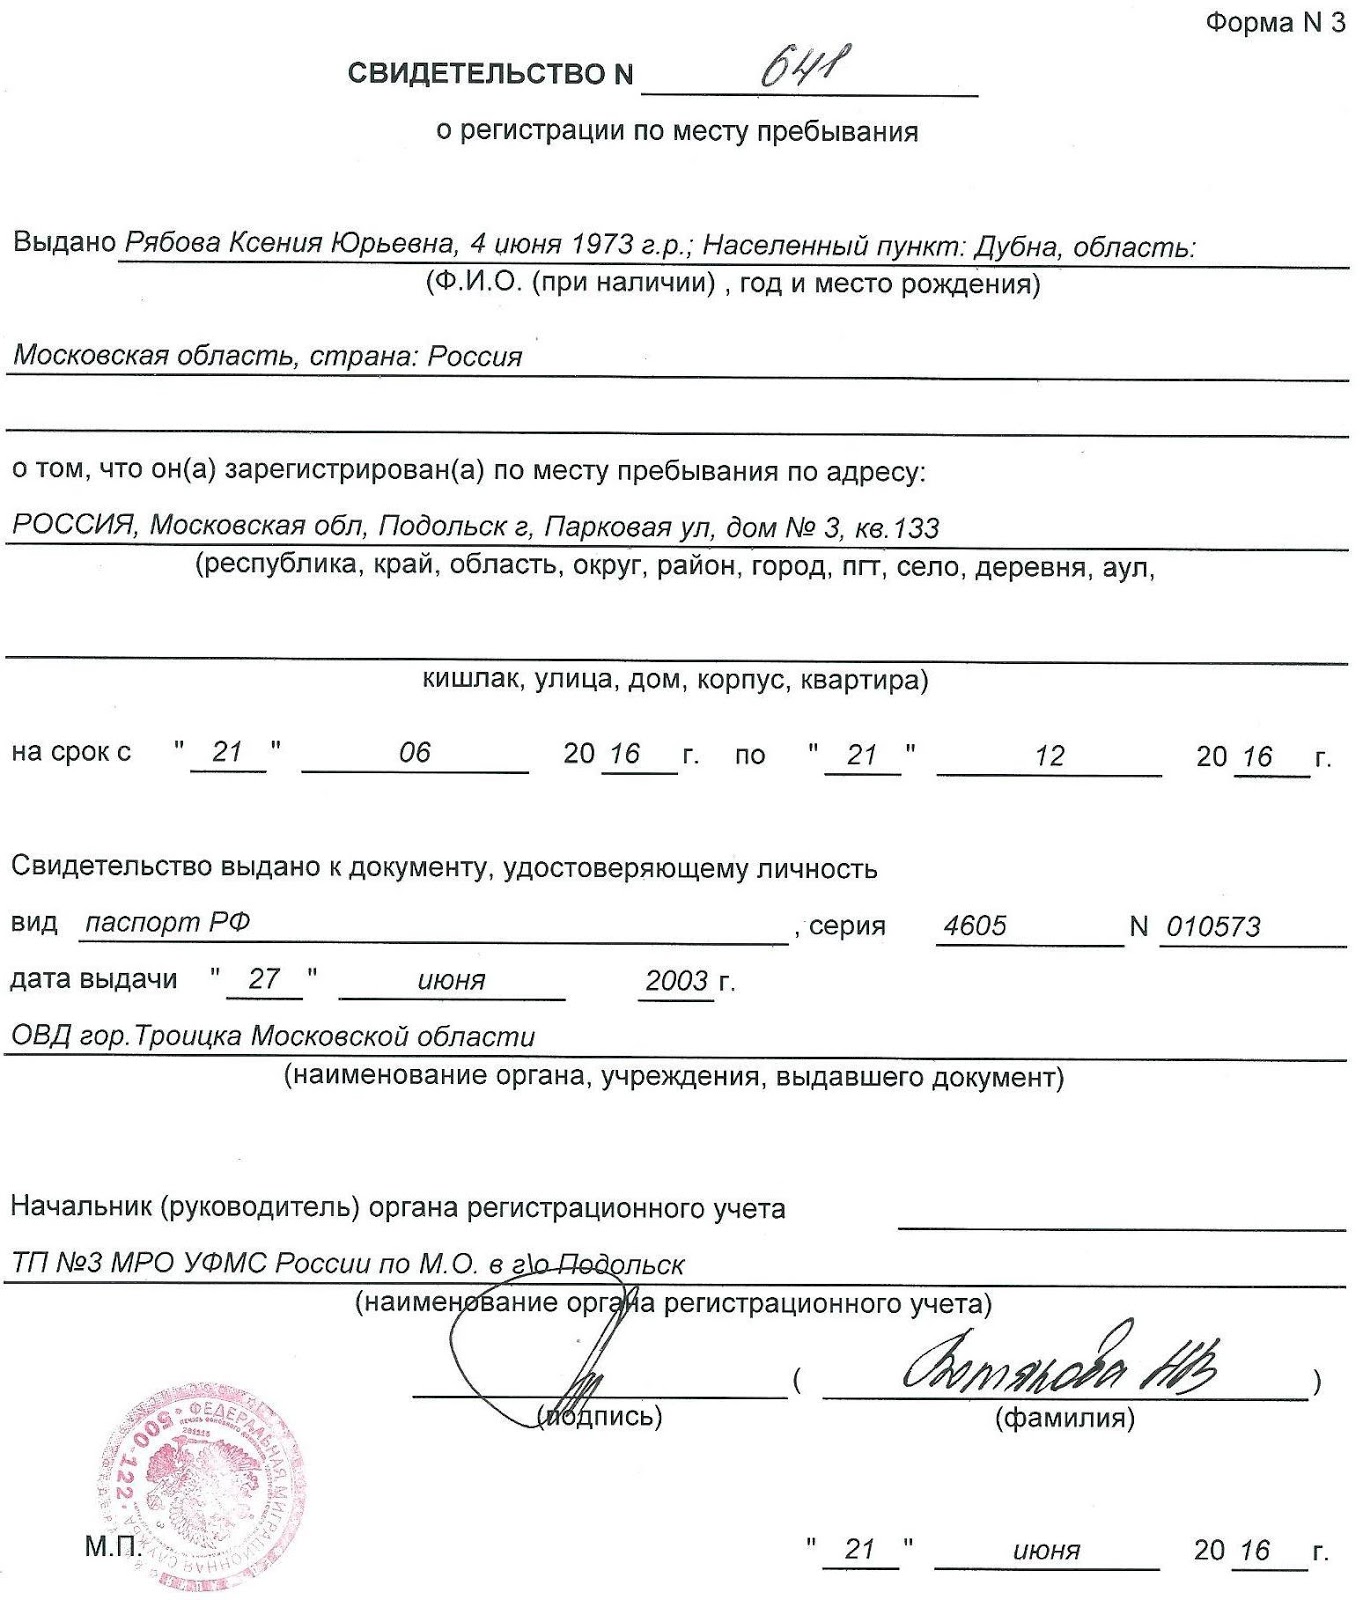 Сделать регистрацию в москве msk propiska